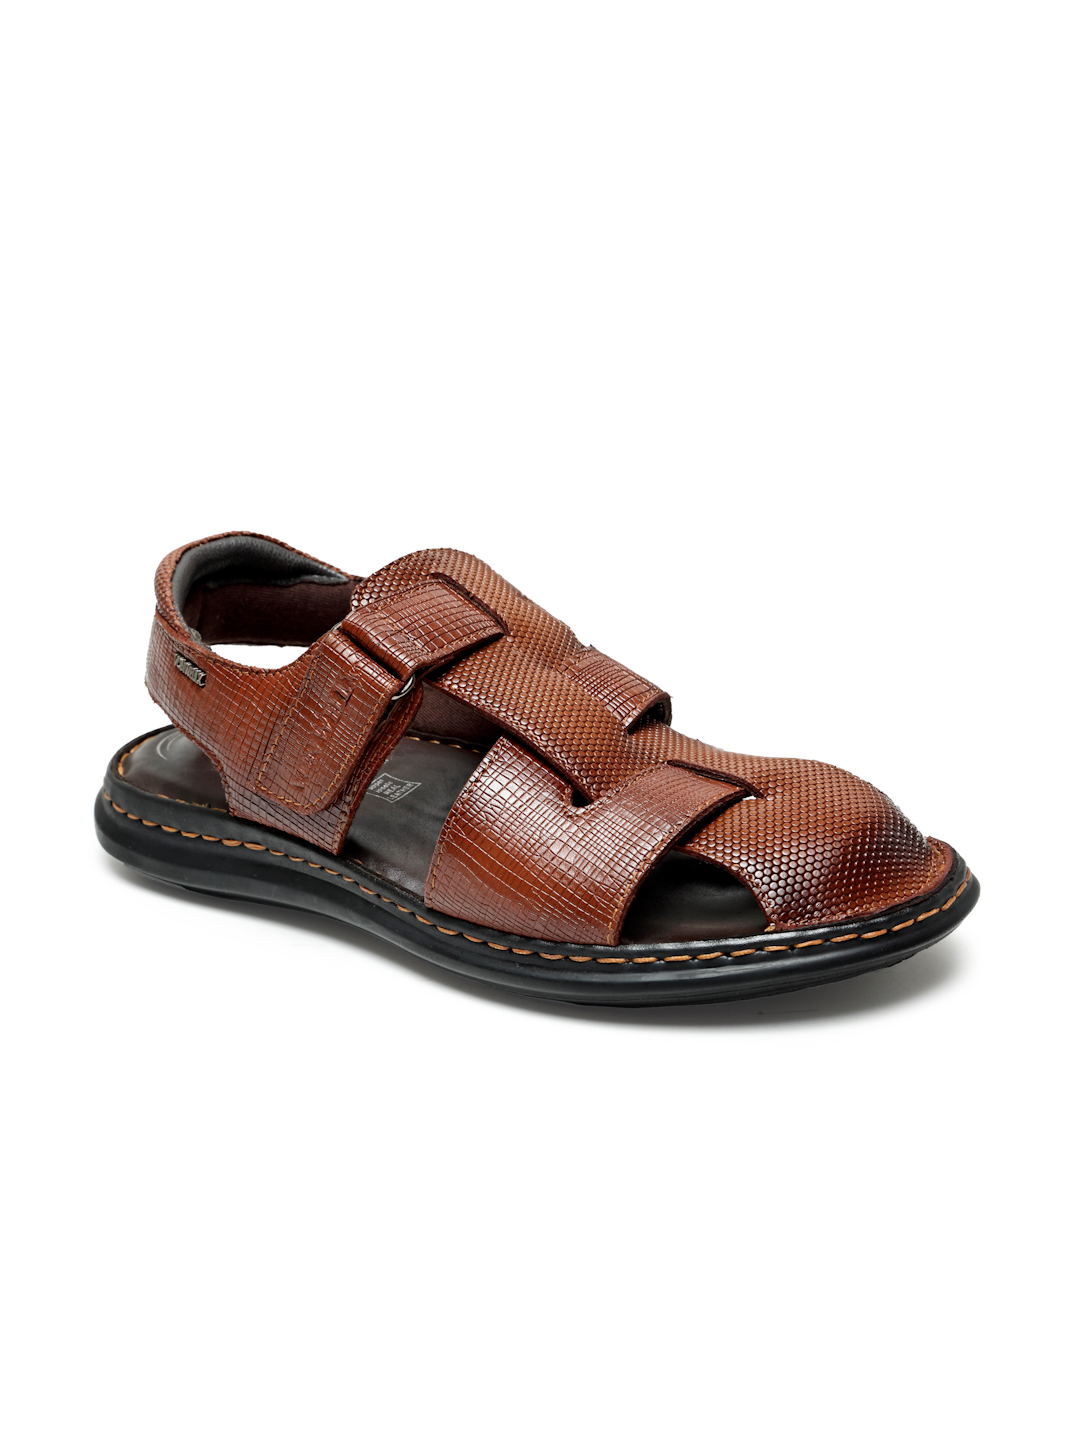 Buy Von Wellx Germany Comfort Men's Tan Sandals Morgen Online in Dehradun